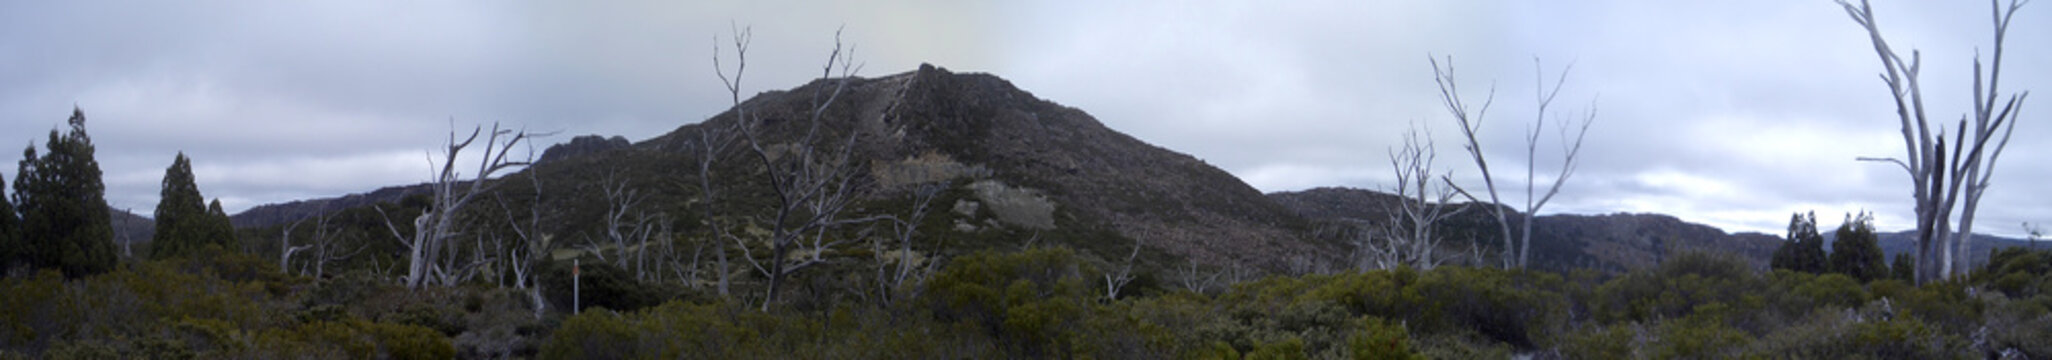 Panorama: Berg in Australien